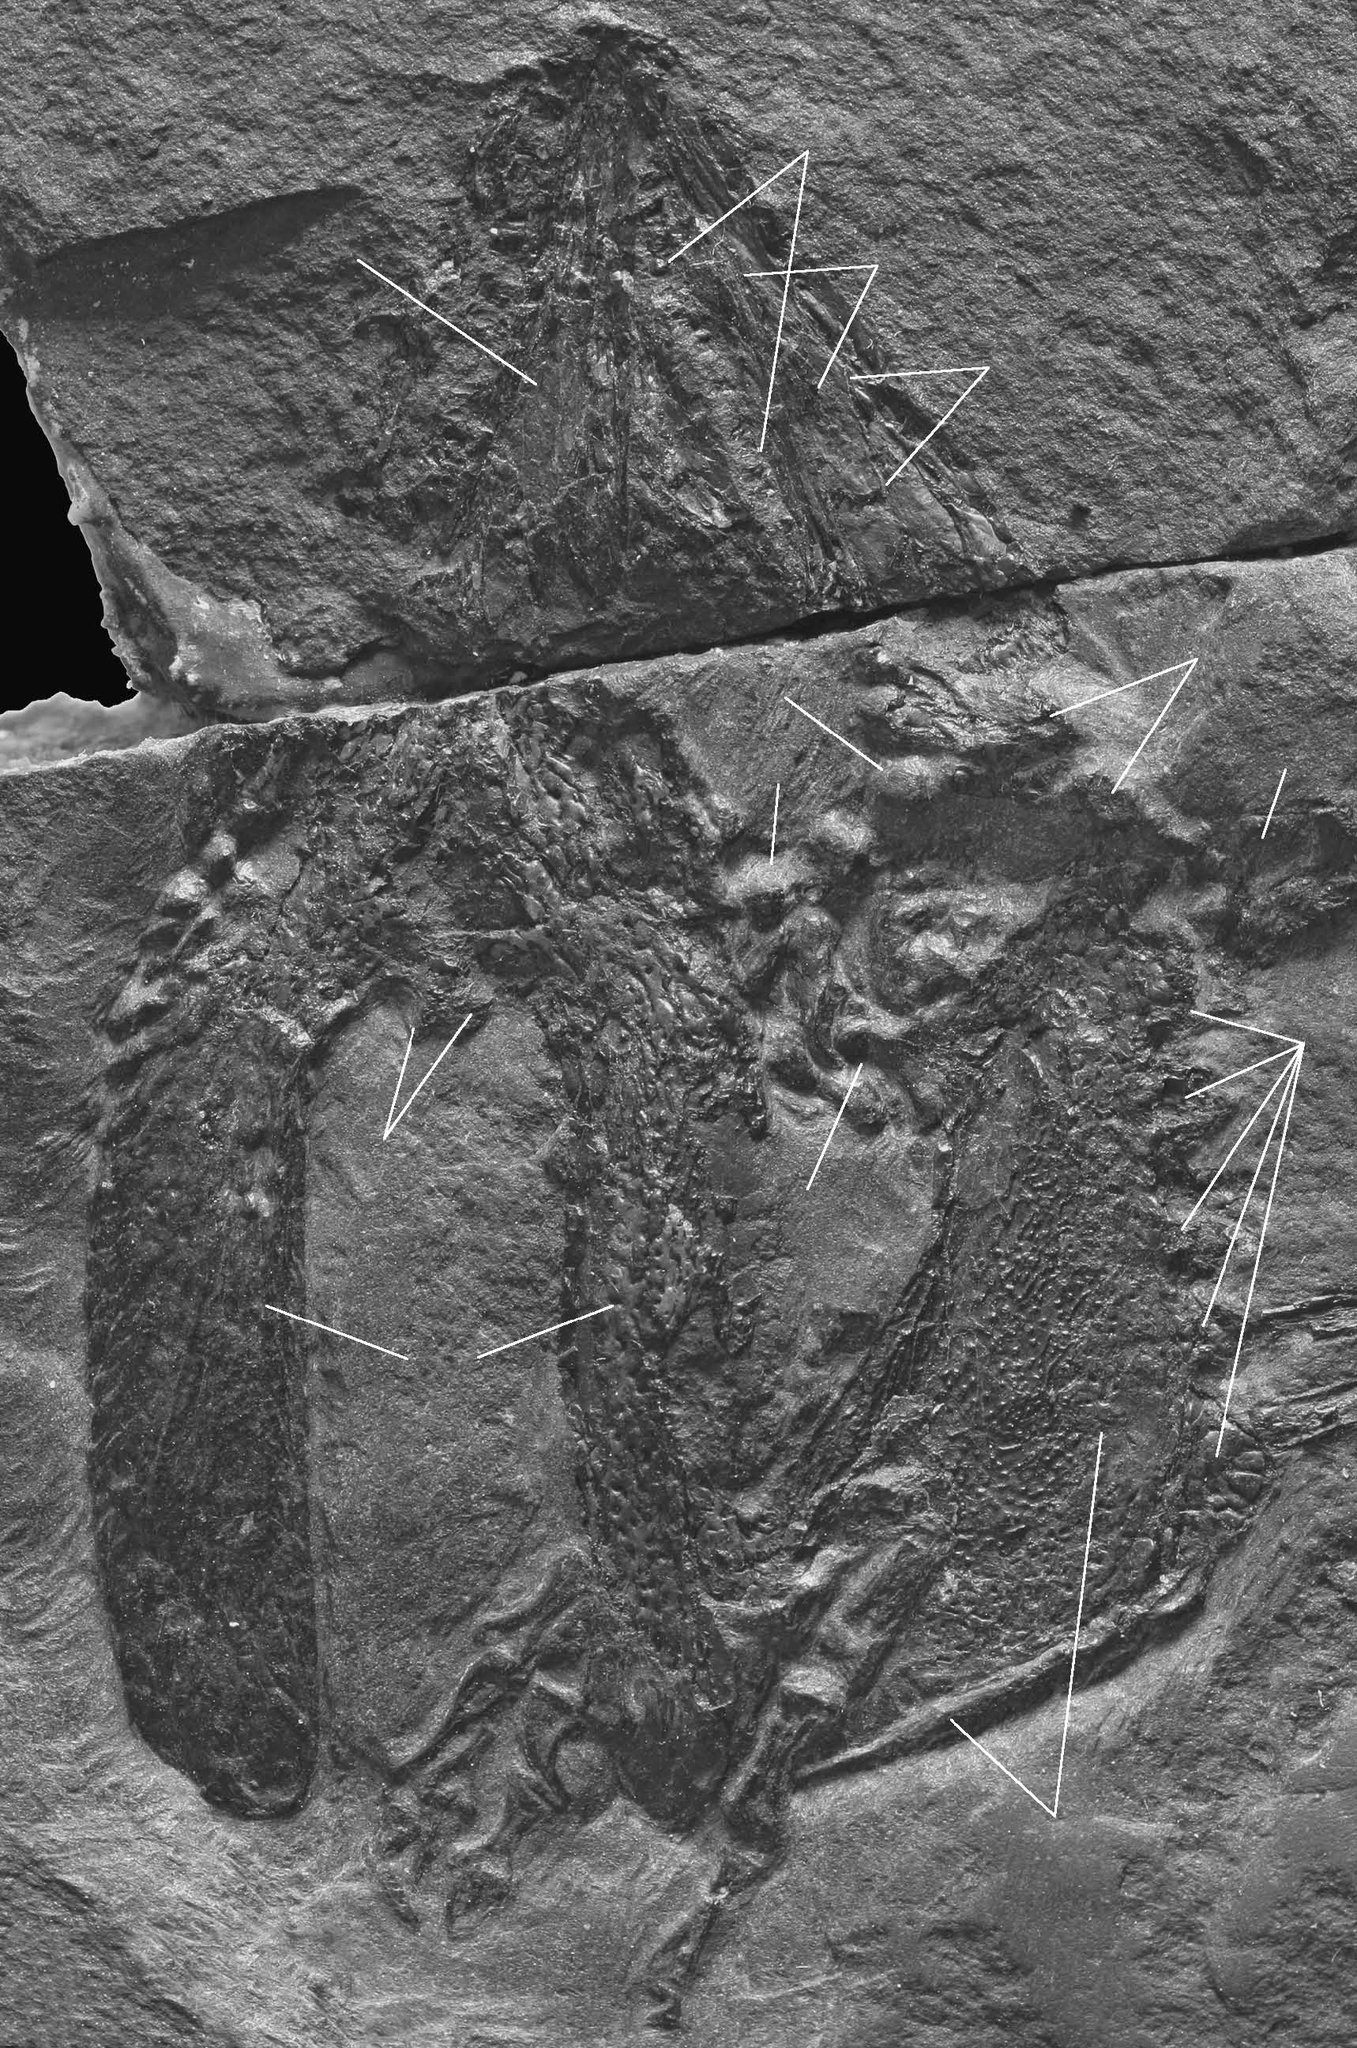 パンテオン A Twitteren ペルム紀の滑空爬虫類 ウェイゲルティサウルス科の新種 Glaurung Schneideri 同時にグラウルング亜科設立 T Co Wfl99mdpjg 論文 T Co Jnuxlsv485 T Co Nt3uatd1c8